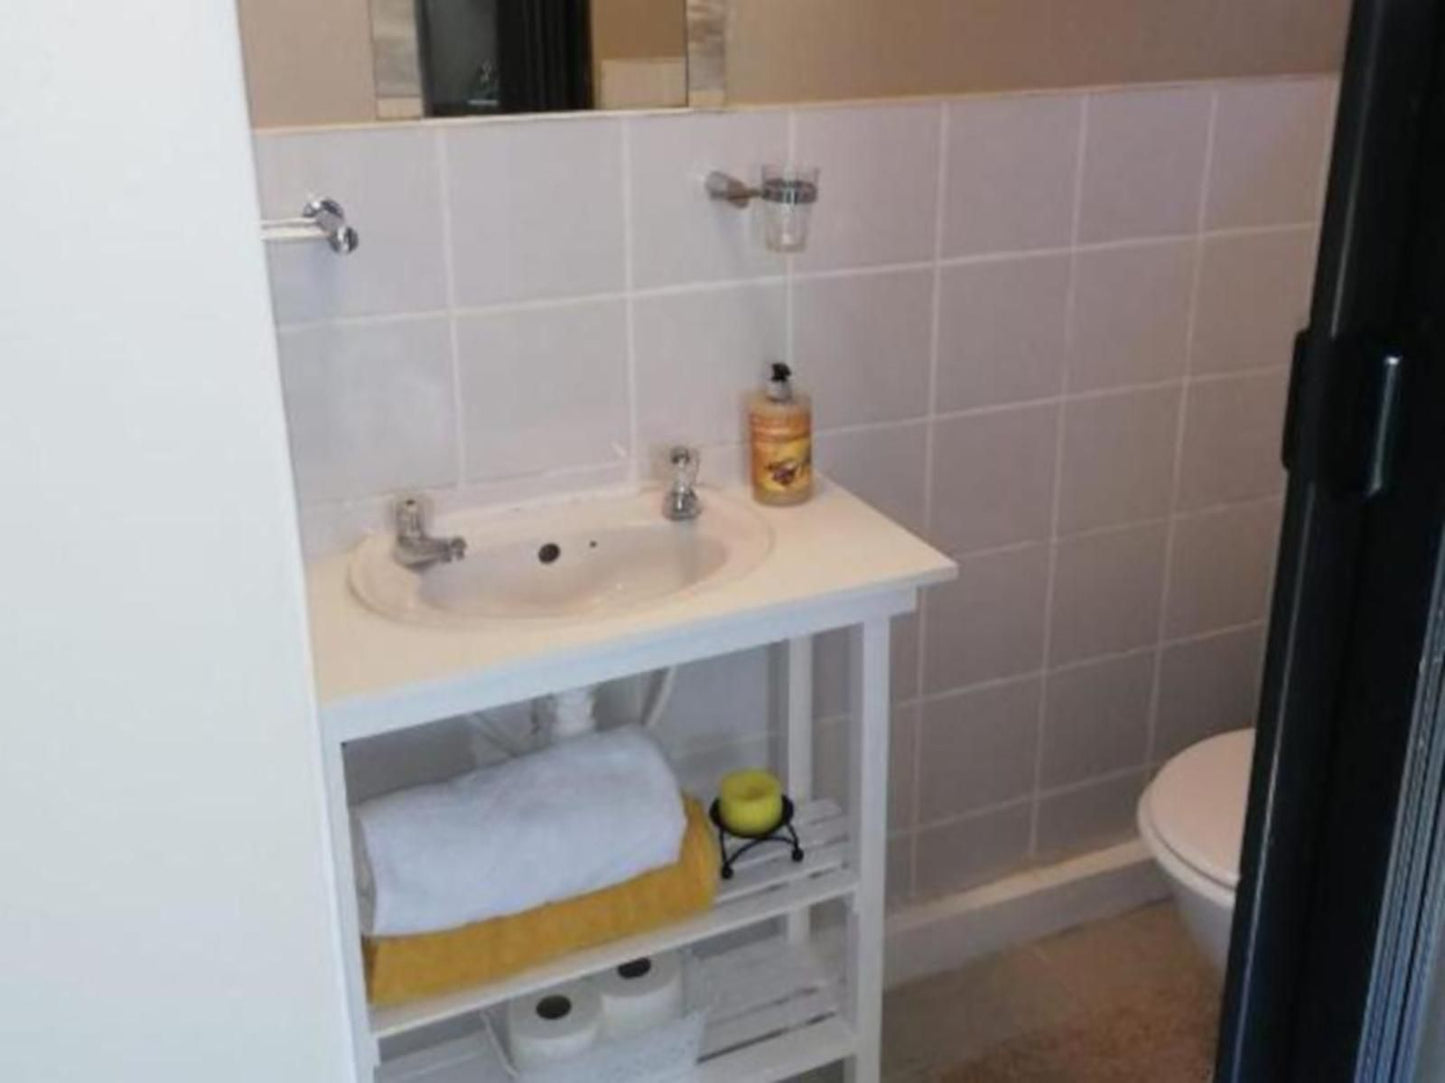 Su Casa Bandb Broadwood Port Elizabeth Eastern Cape South Africa Unsaturated, Bathroom